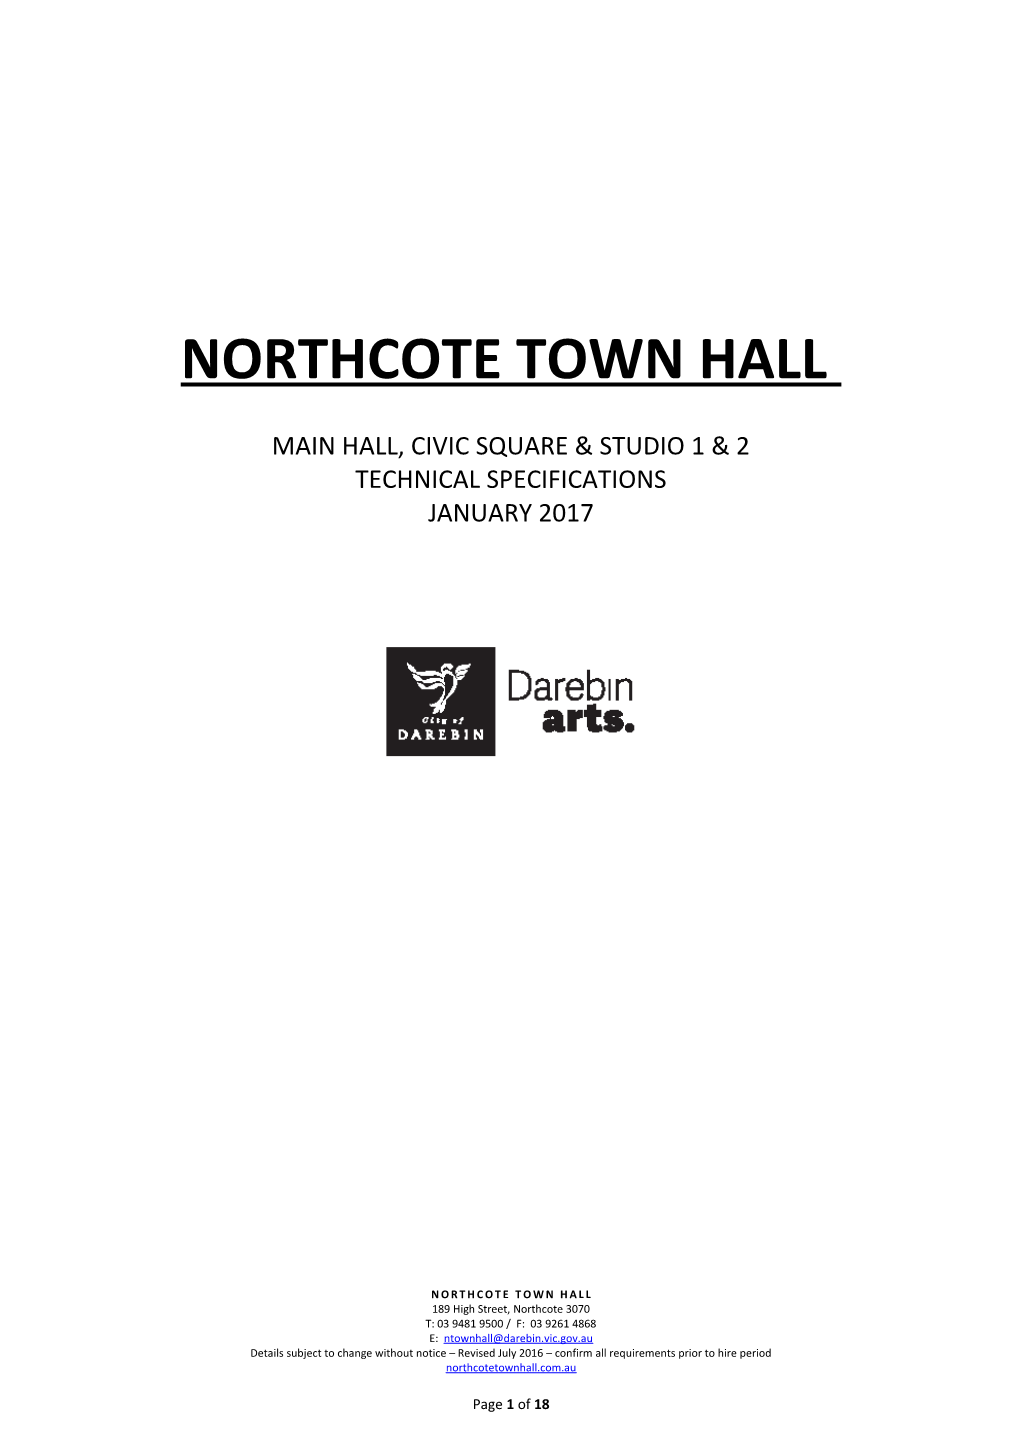 Northcote Town Hall